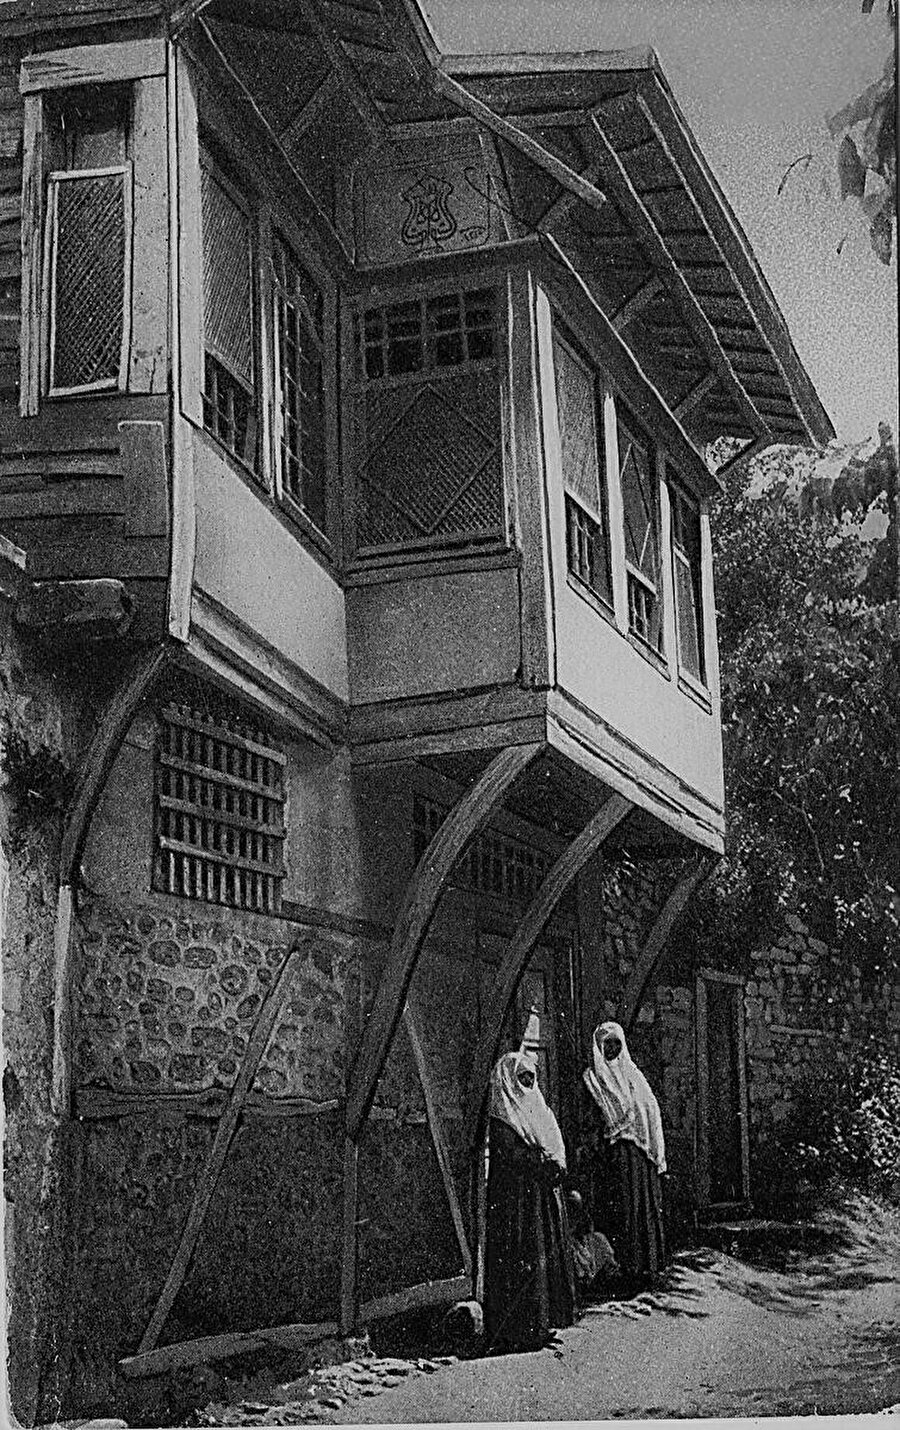 Osmanlı’da Batılı anlamda balkon kültürüyle tanışma 19. yüzyıldaki değişim dönemine rastlar.